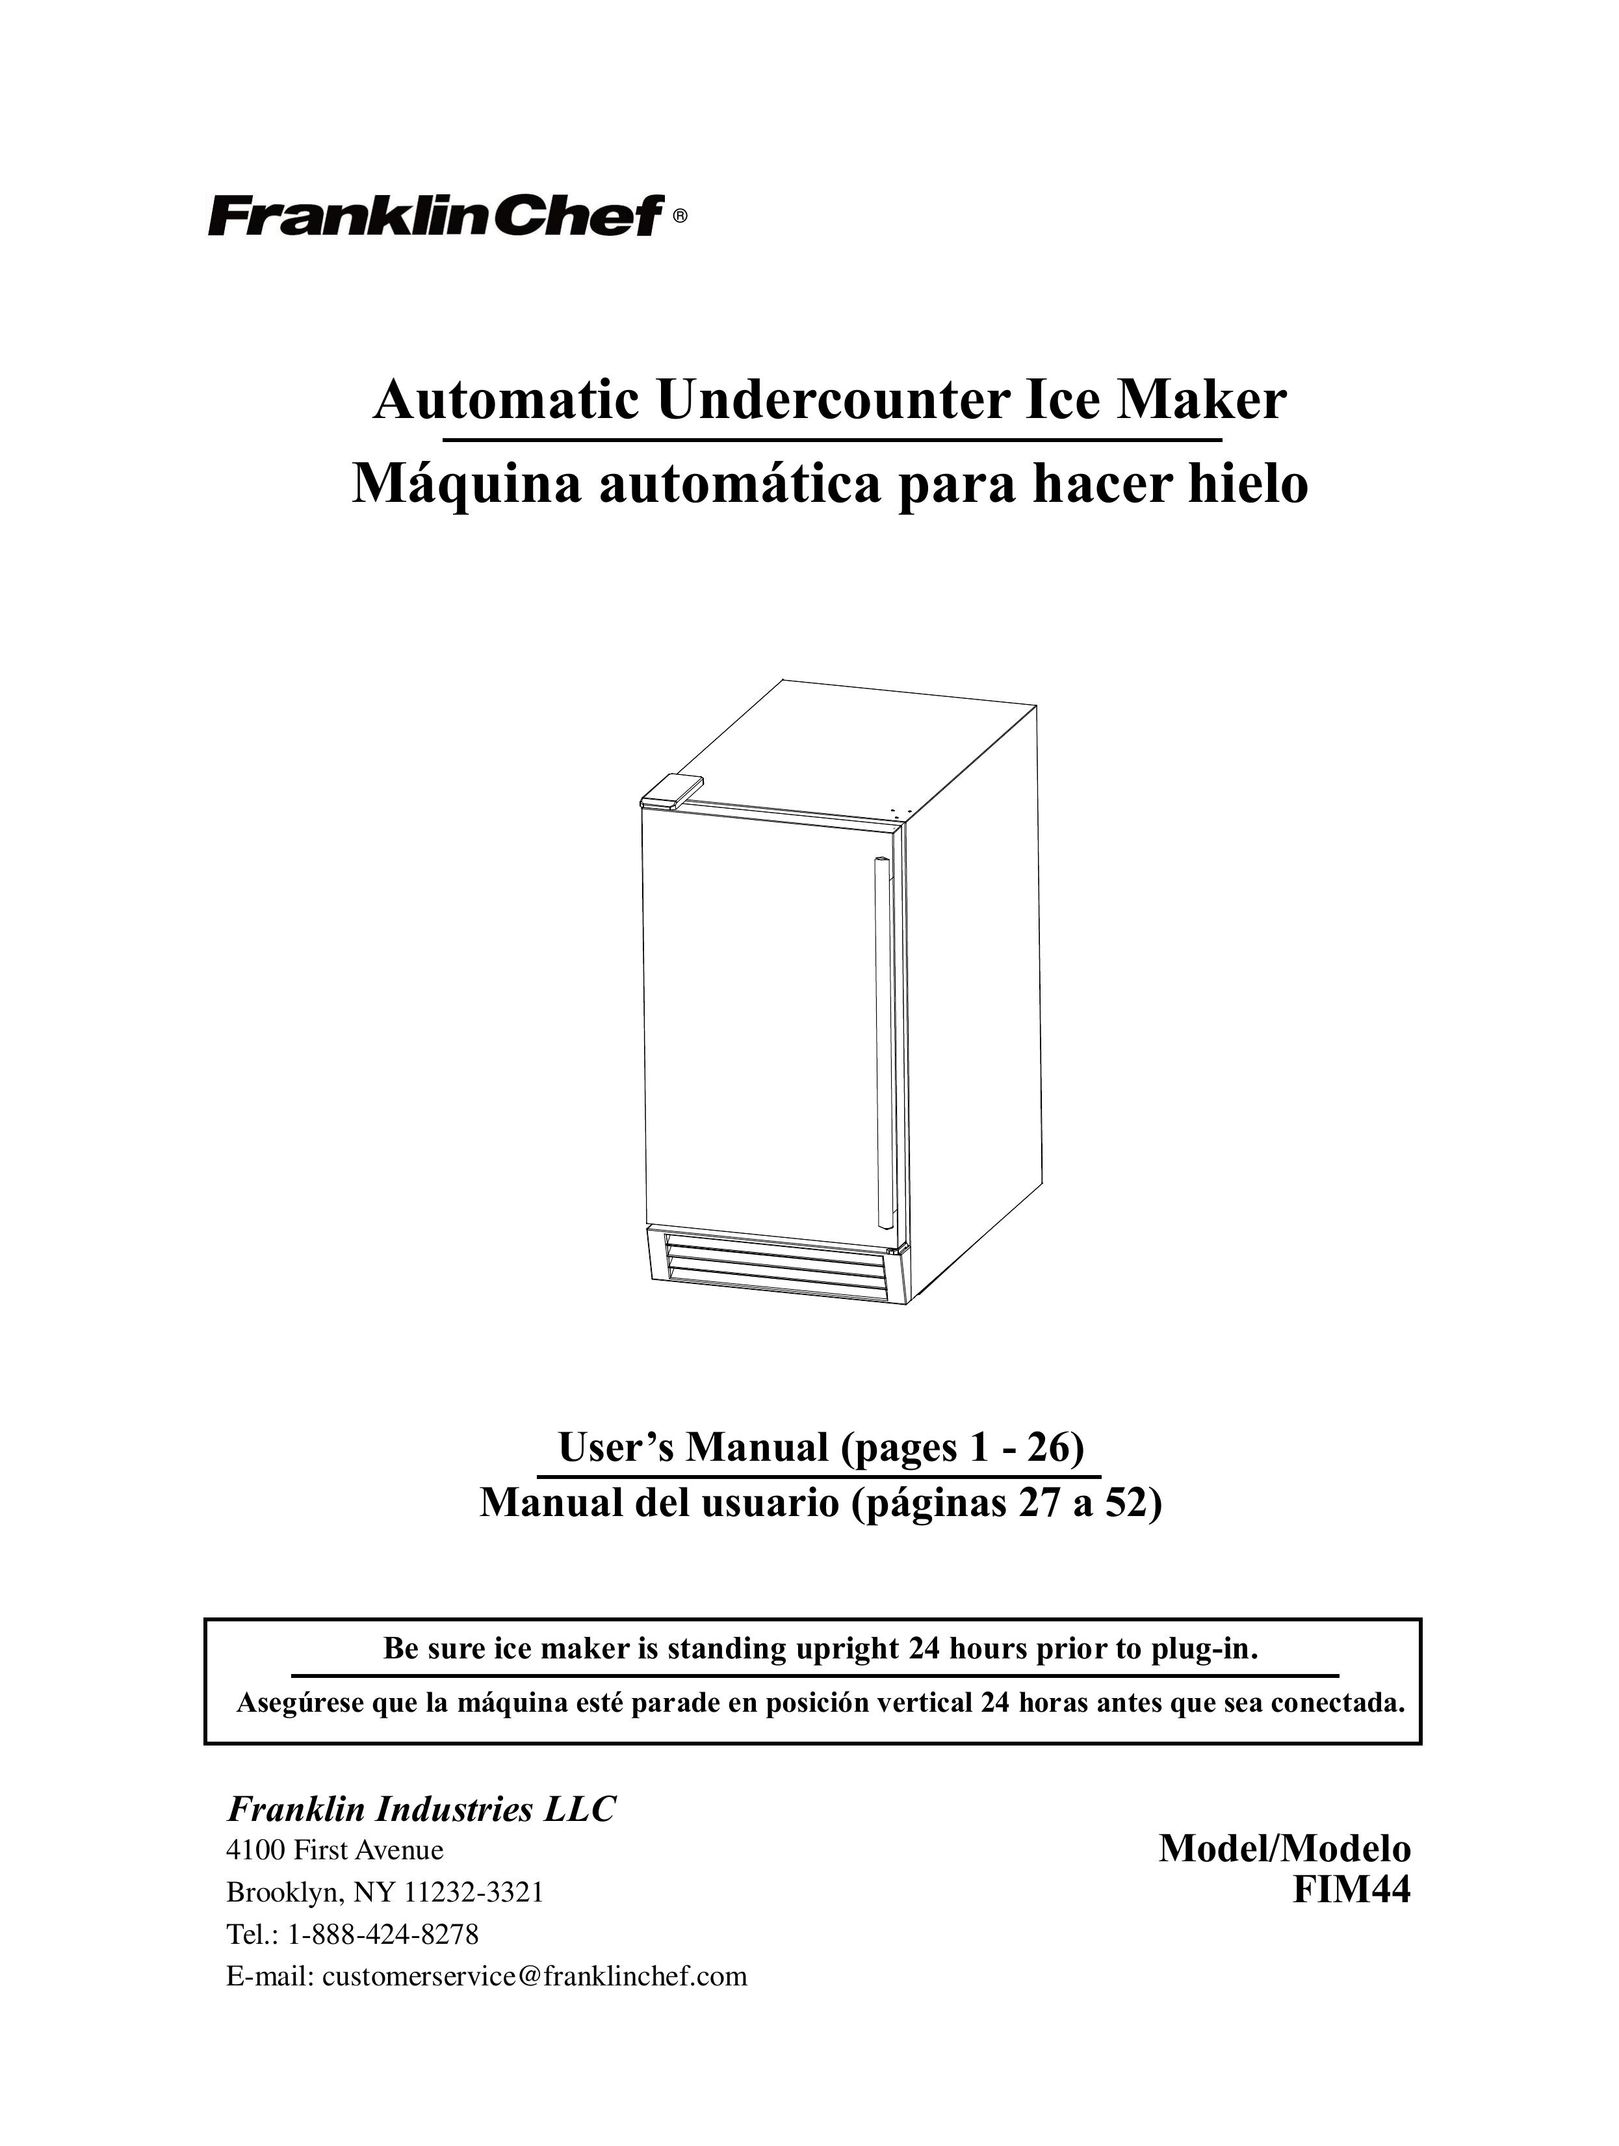 Franklin Industries, L.L.C. FIM44 Ice Maker User Manual